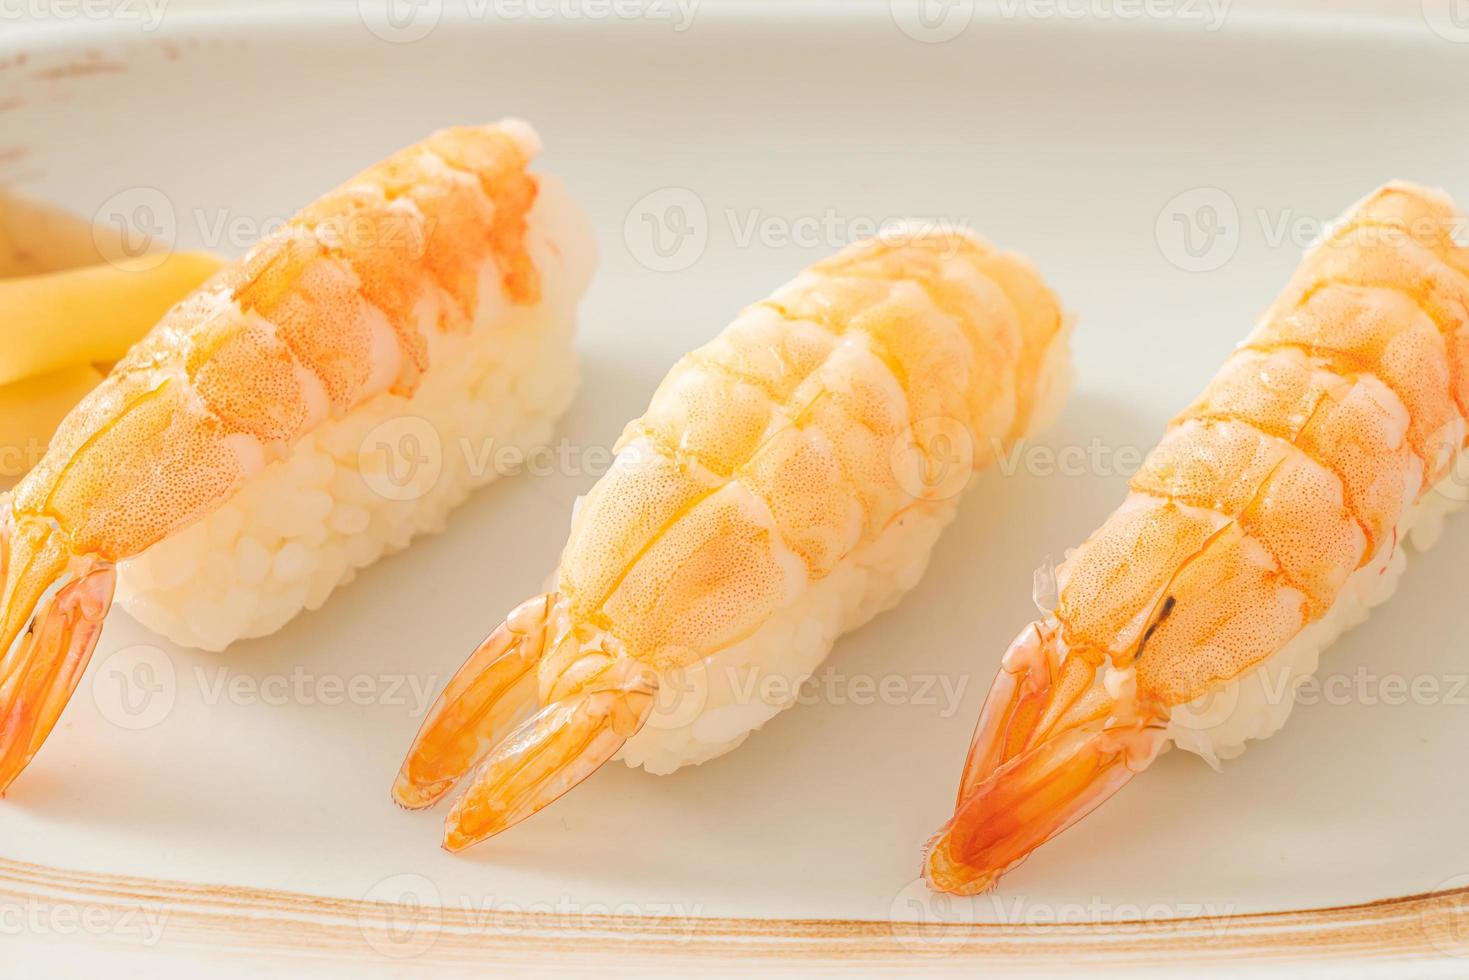 Shrimps sushi or ebi nigiri sushi photo